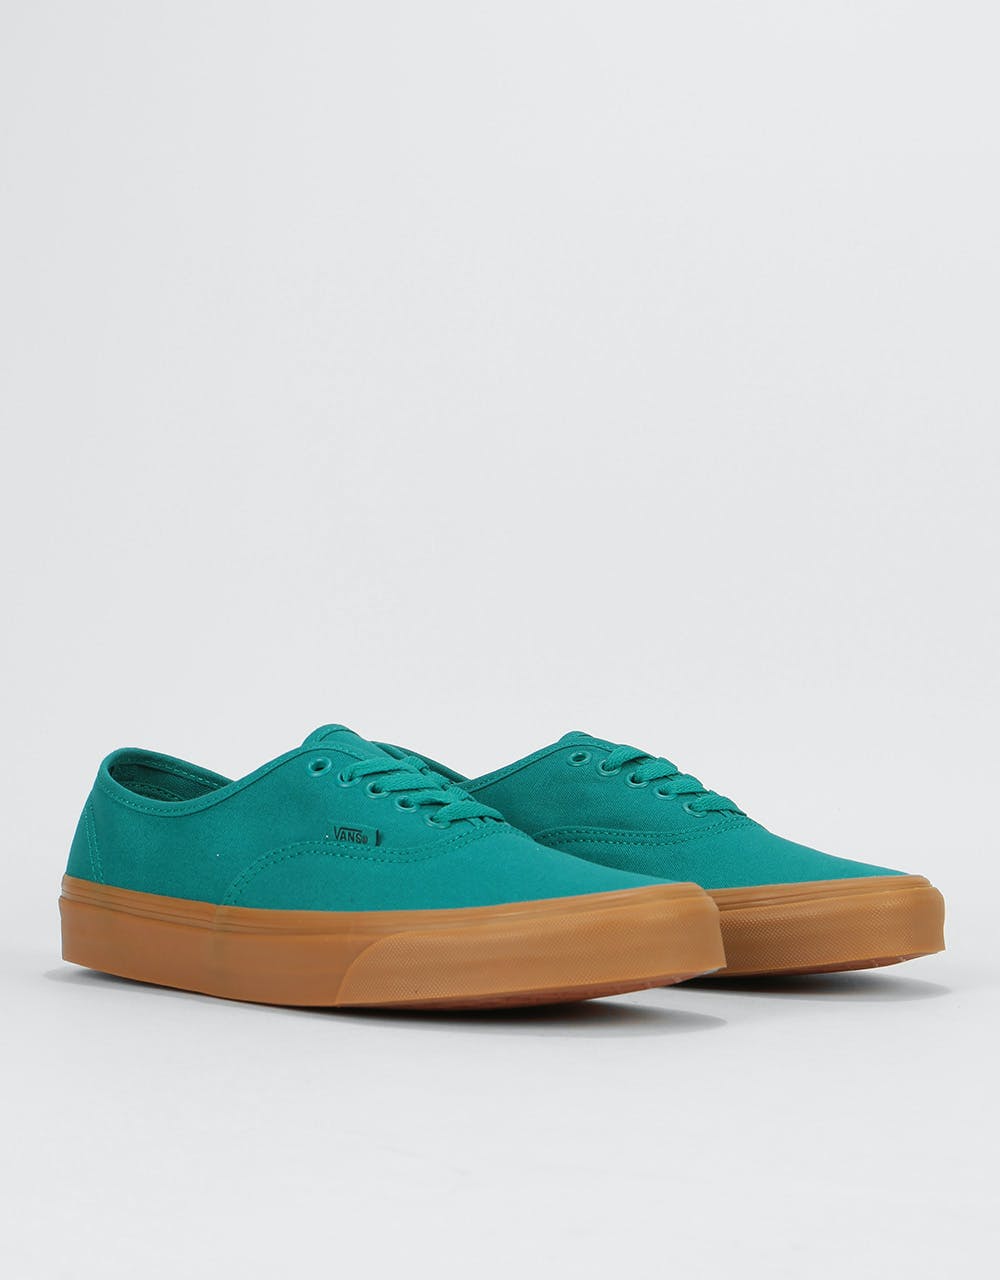 Vans Authentic Skate Shoes - Quetzal Green/Gum